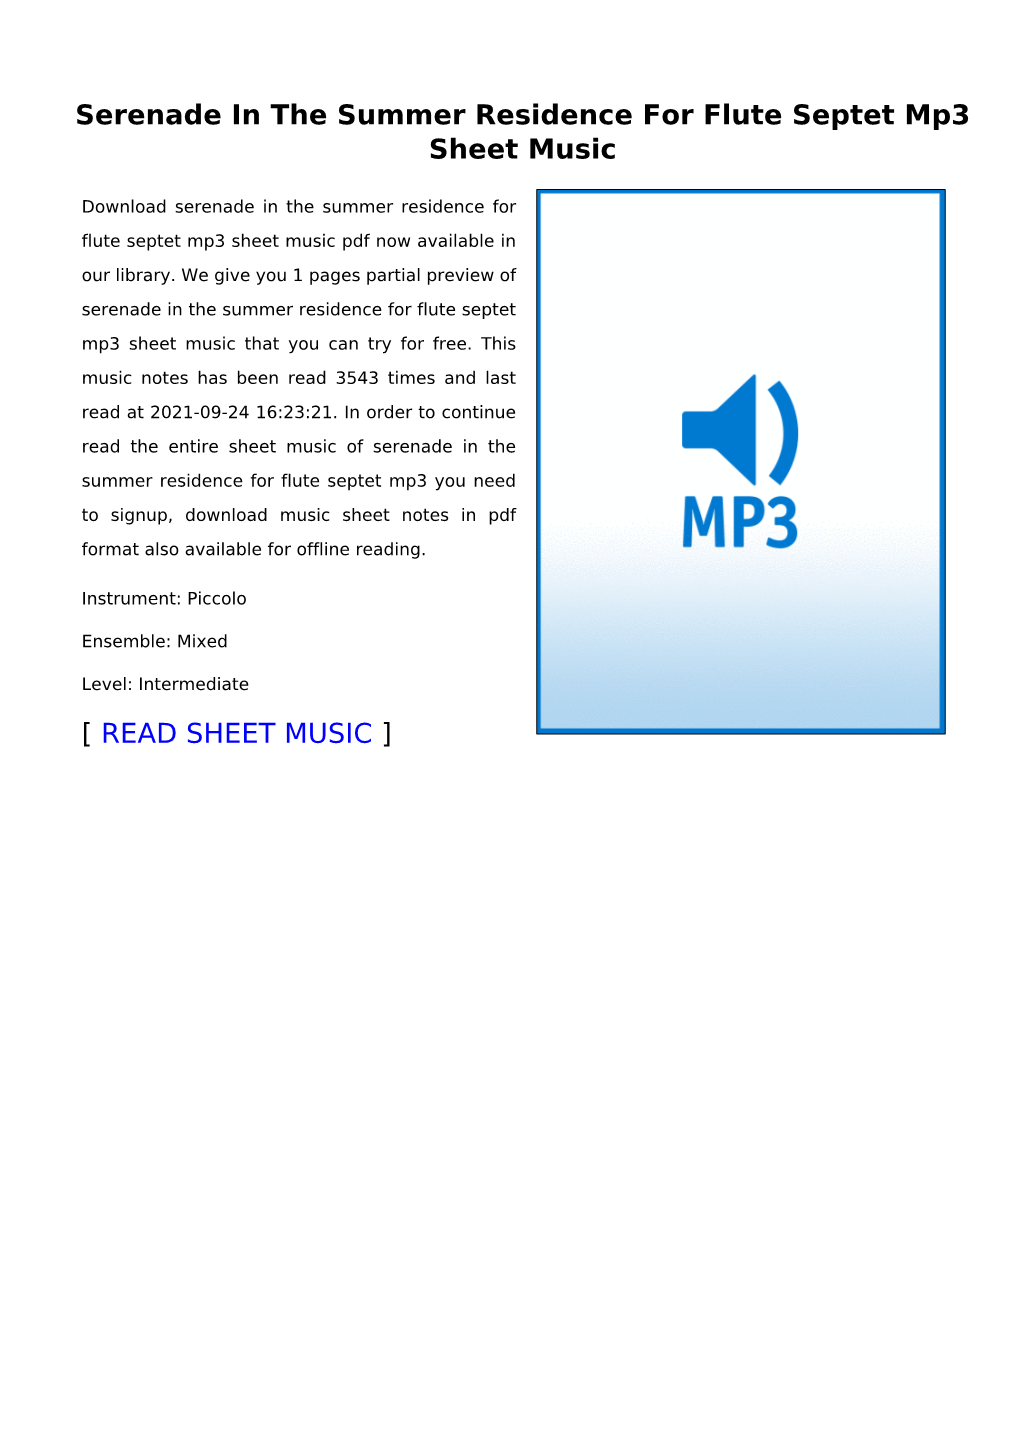 Serenade in the Summer Residence for Flute Septet Mp3 Sheet Music